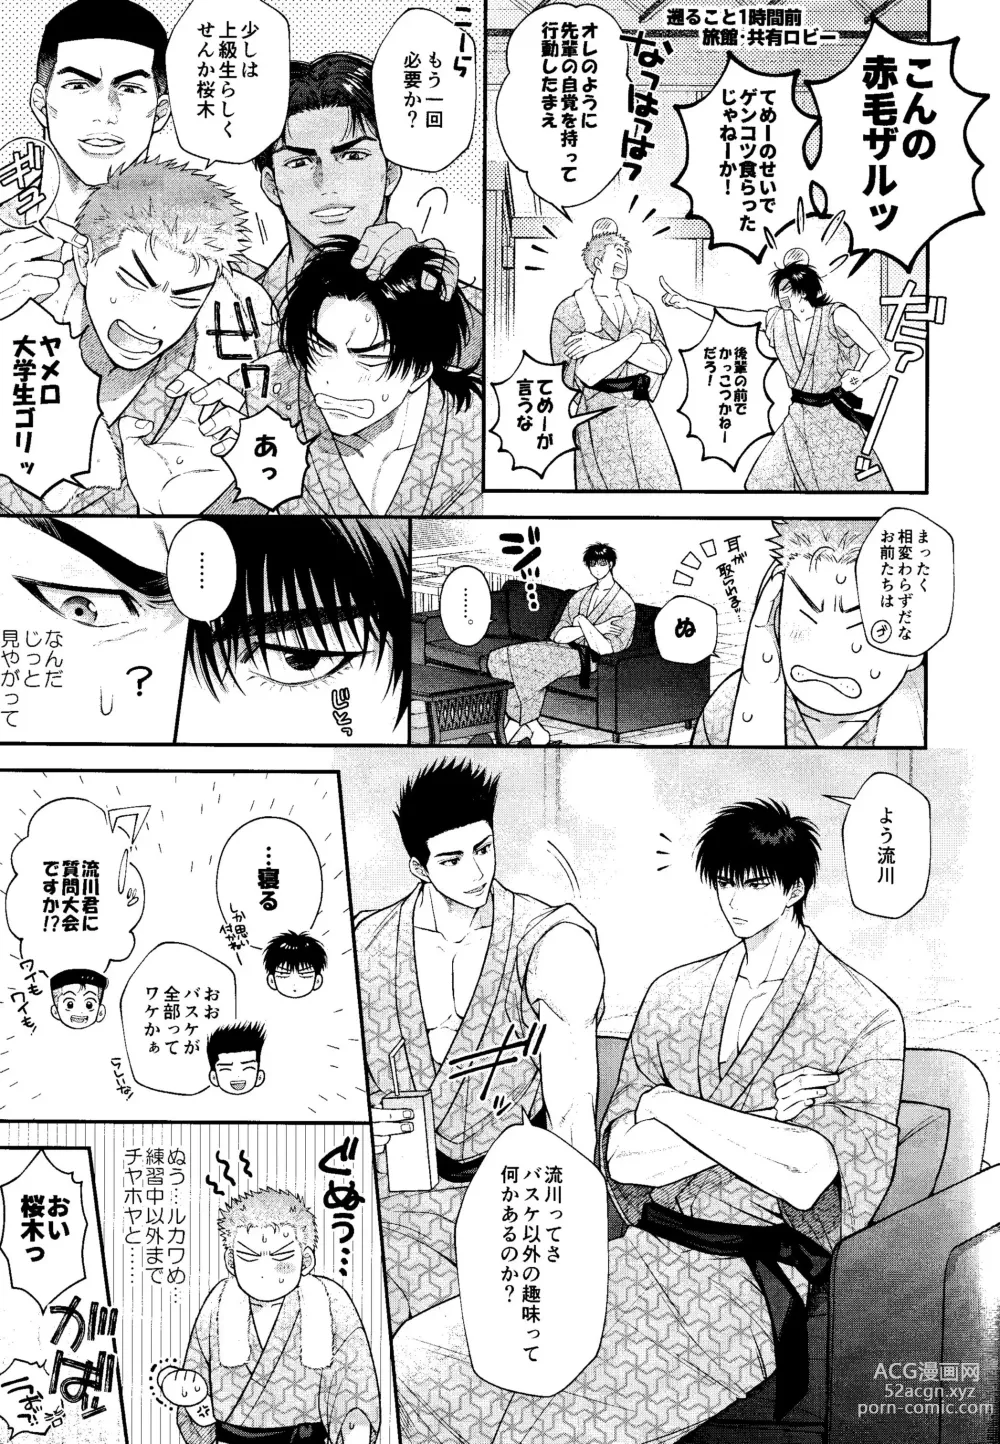 Page 5 of doujinshi Subeteha Kawaii teme-no Sei!